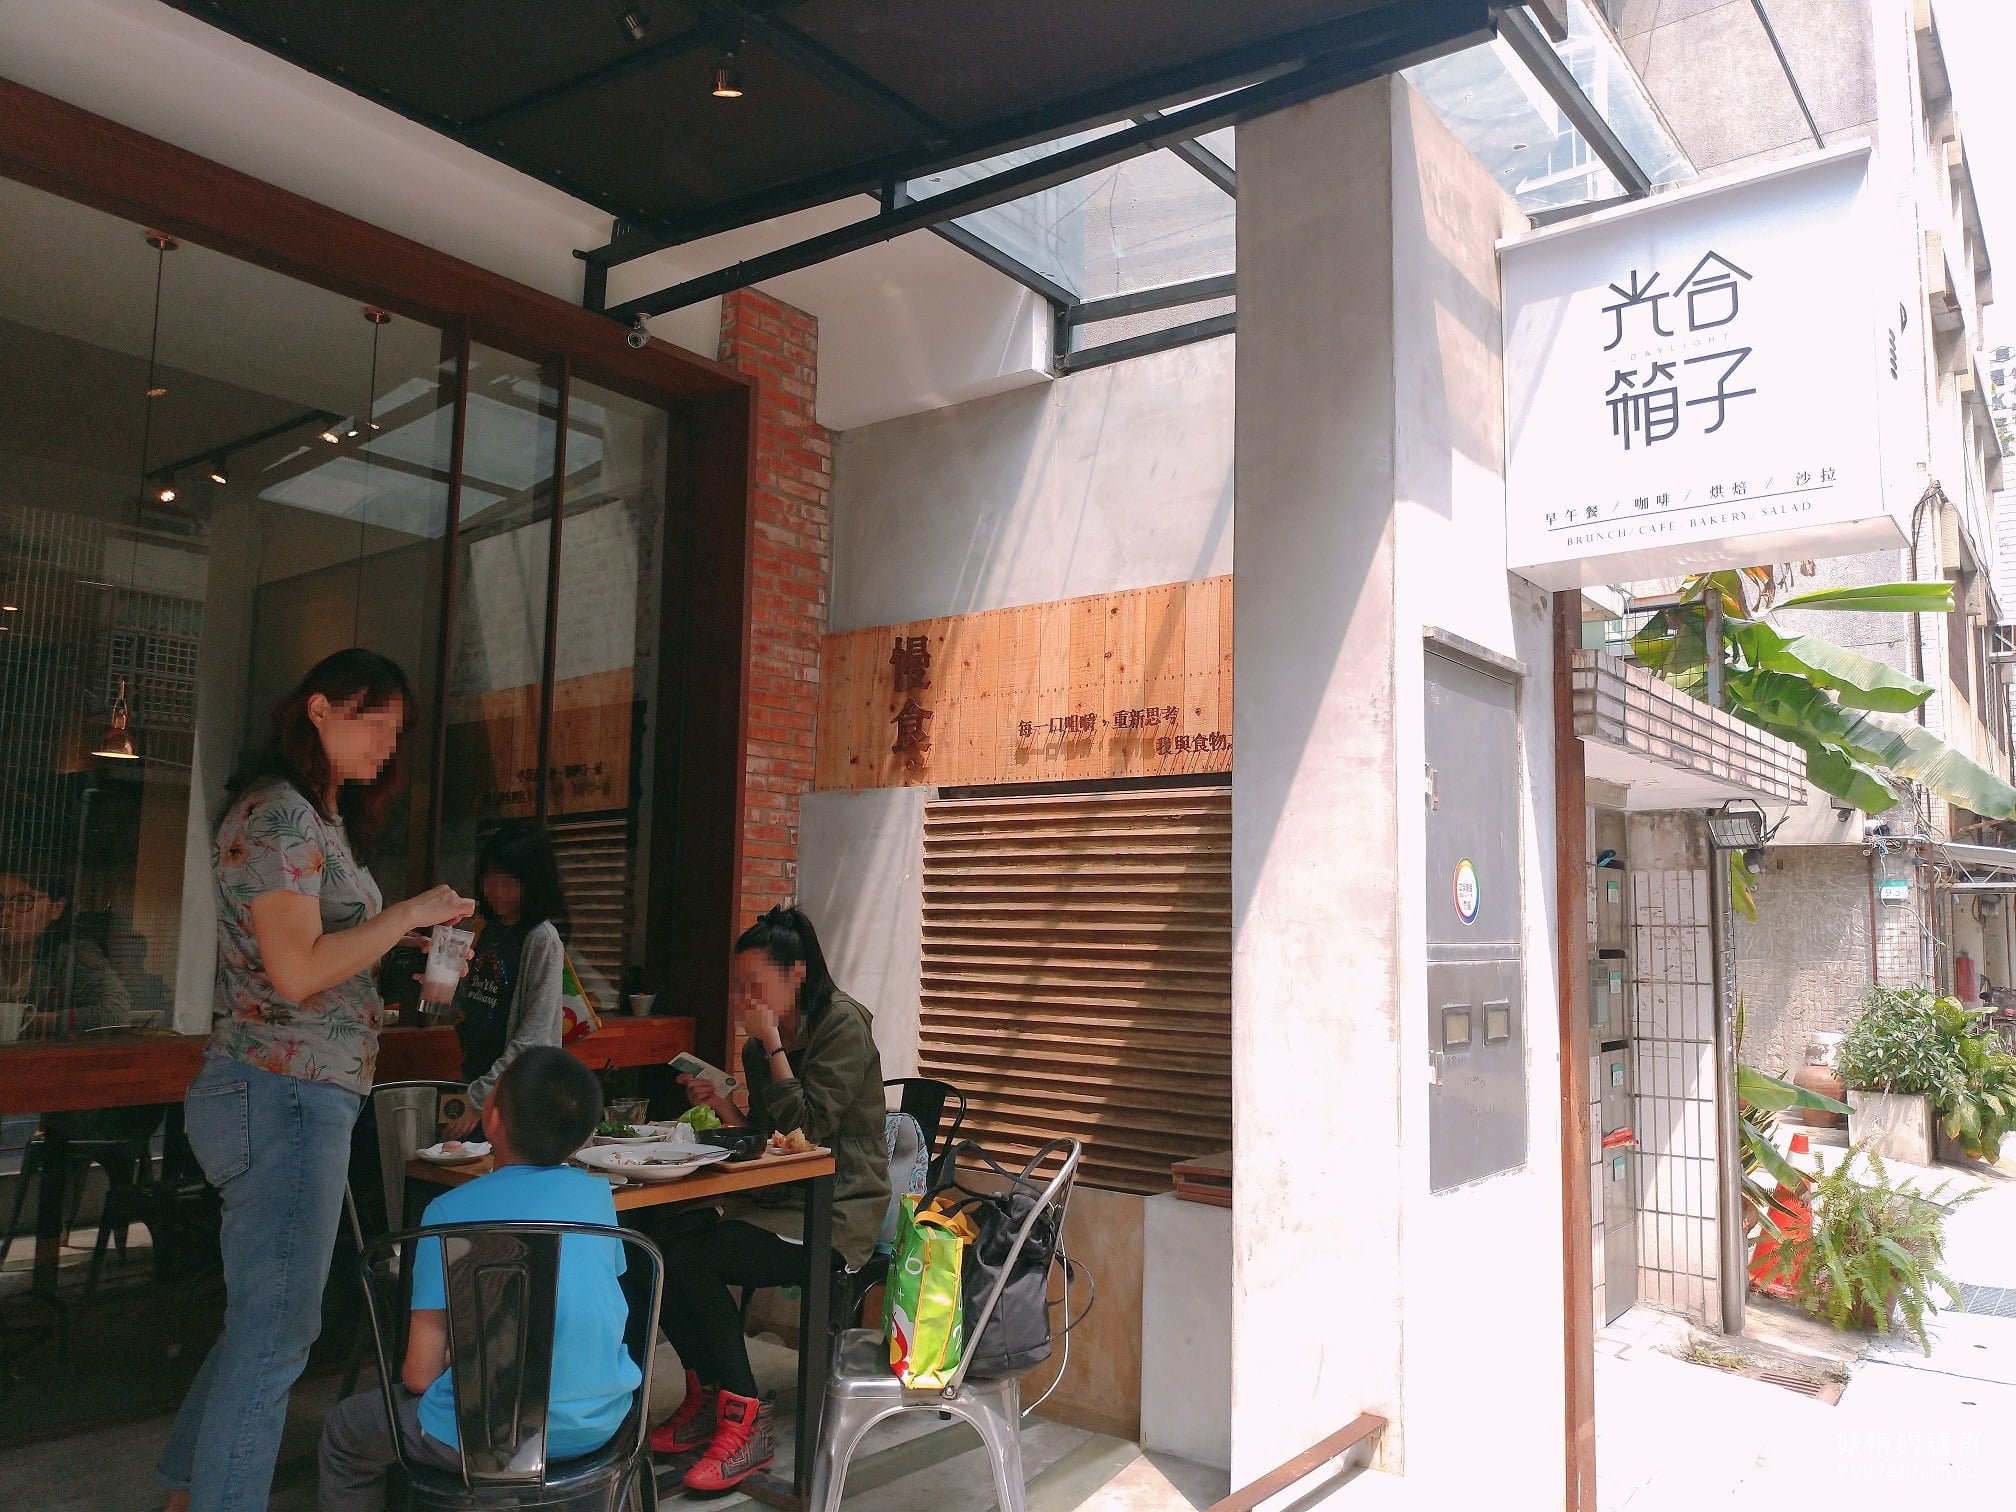 2019 04 05 22 03 59 result - 台北早午餐 | Daylight 光合箱子東門店，在寧靜小巷裡體會慢食愉悅